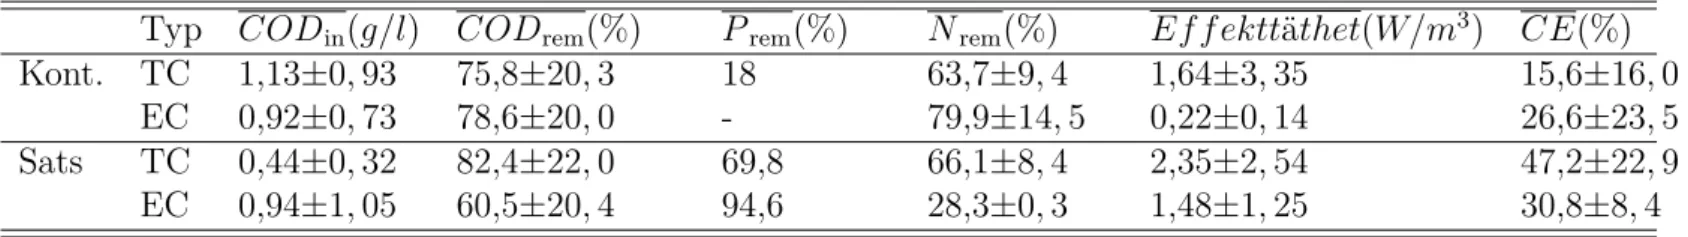 Tabell 3.4: Genomsnittliga värden med standardavvikelse på MFC-data från tabell 3.2 och 3.3.